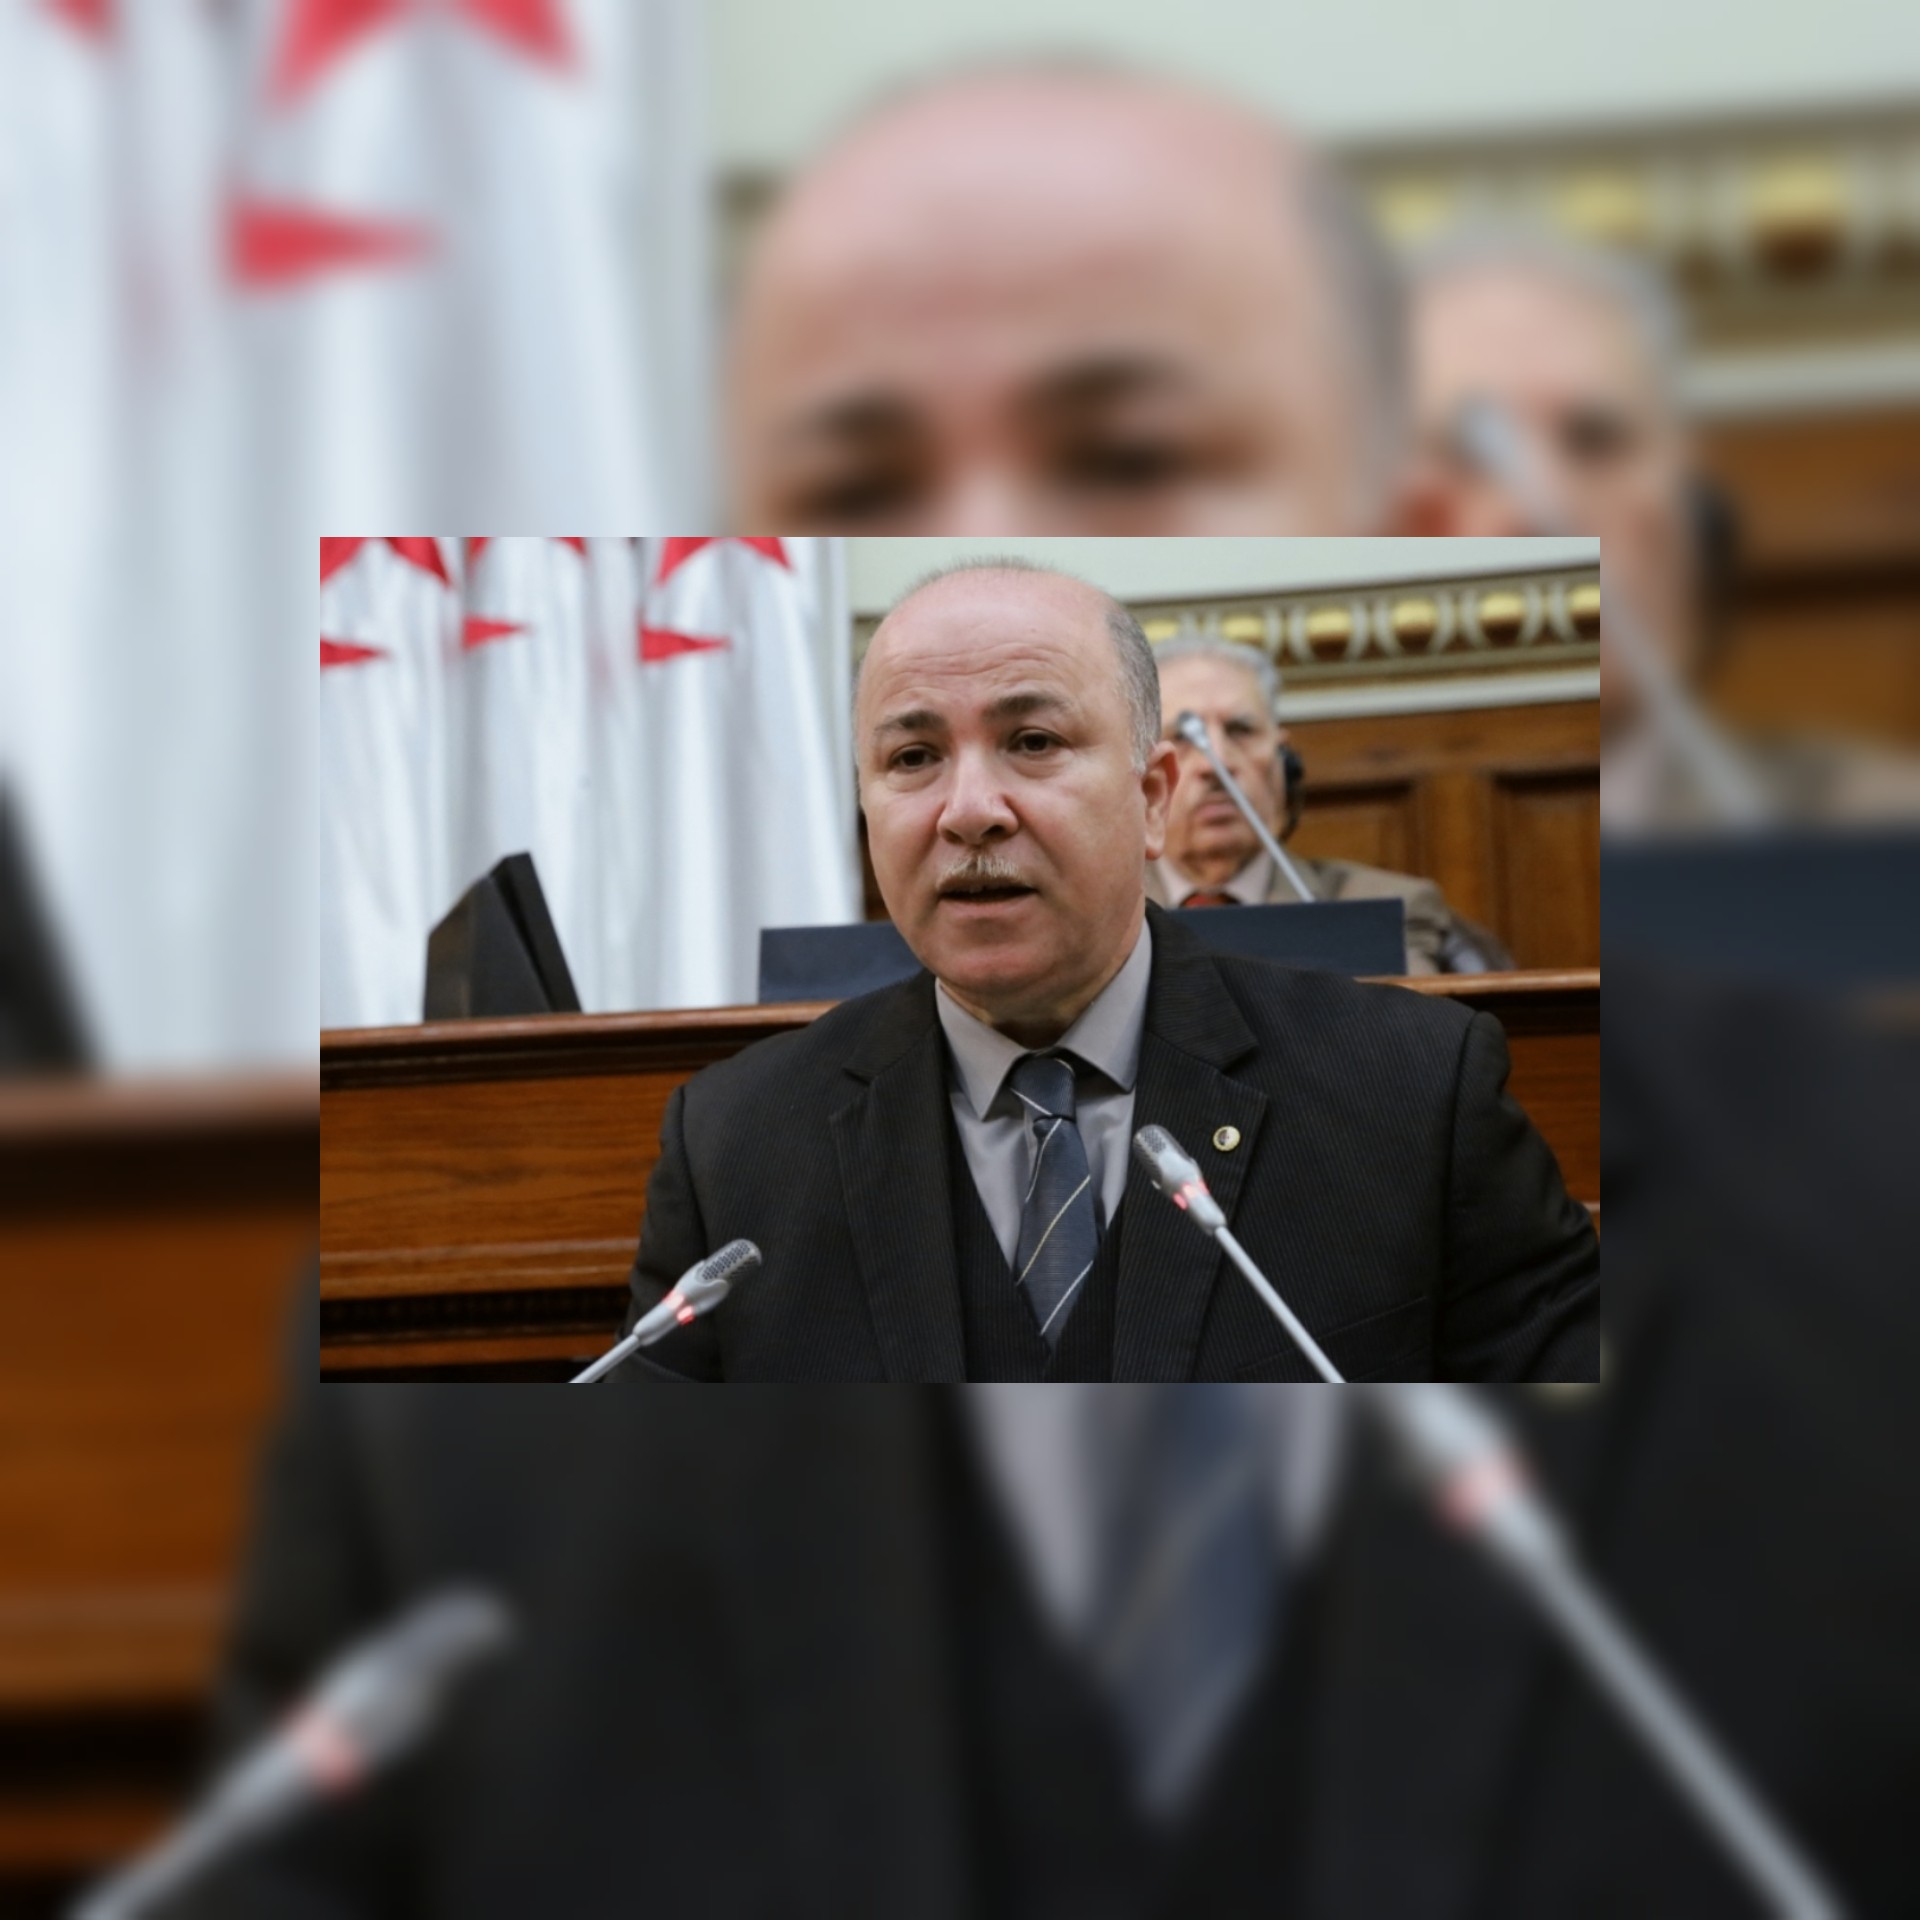 الجزائر /أيمن بن عبد الرحمن تكنوقراطي بكفاءة اقتصادية ومالية لقيادة الحكومة في الجزائر